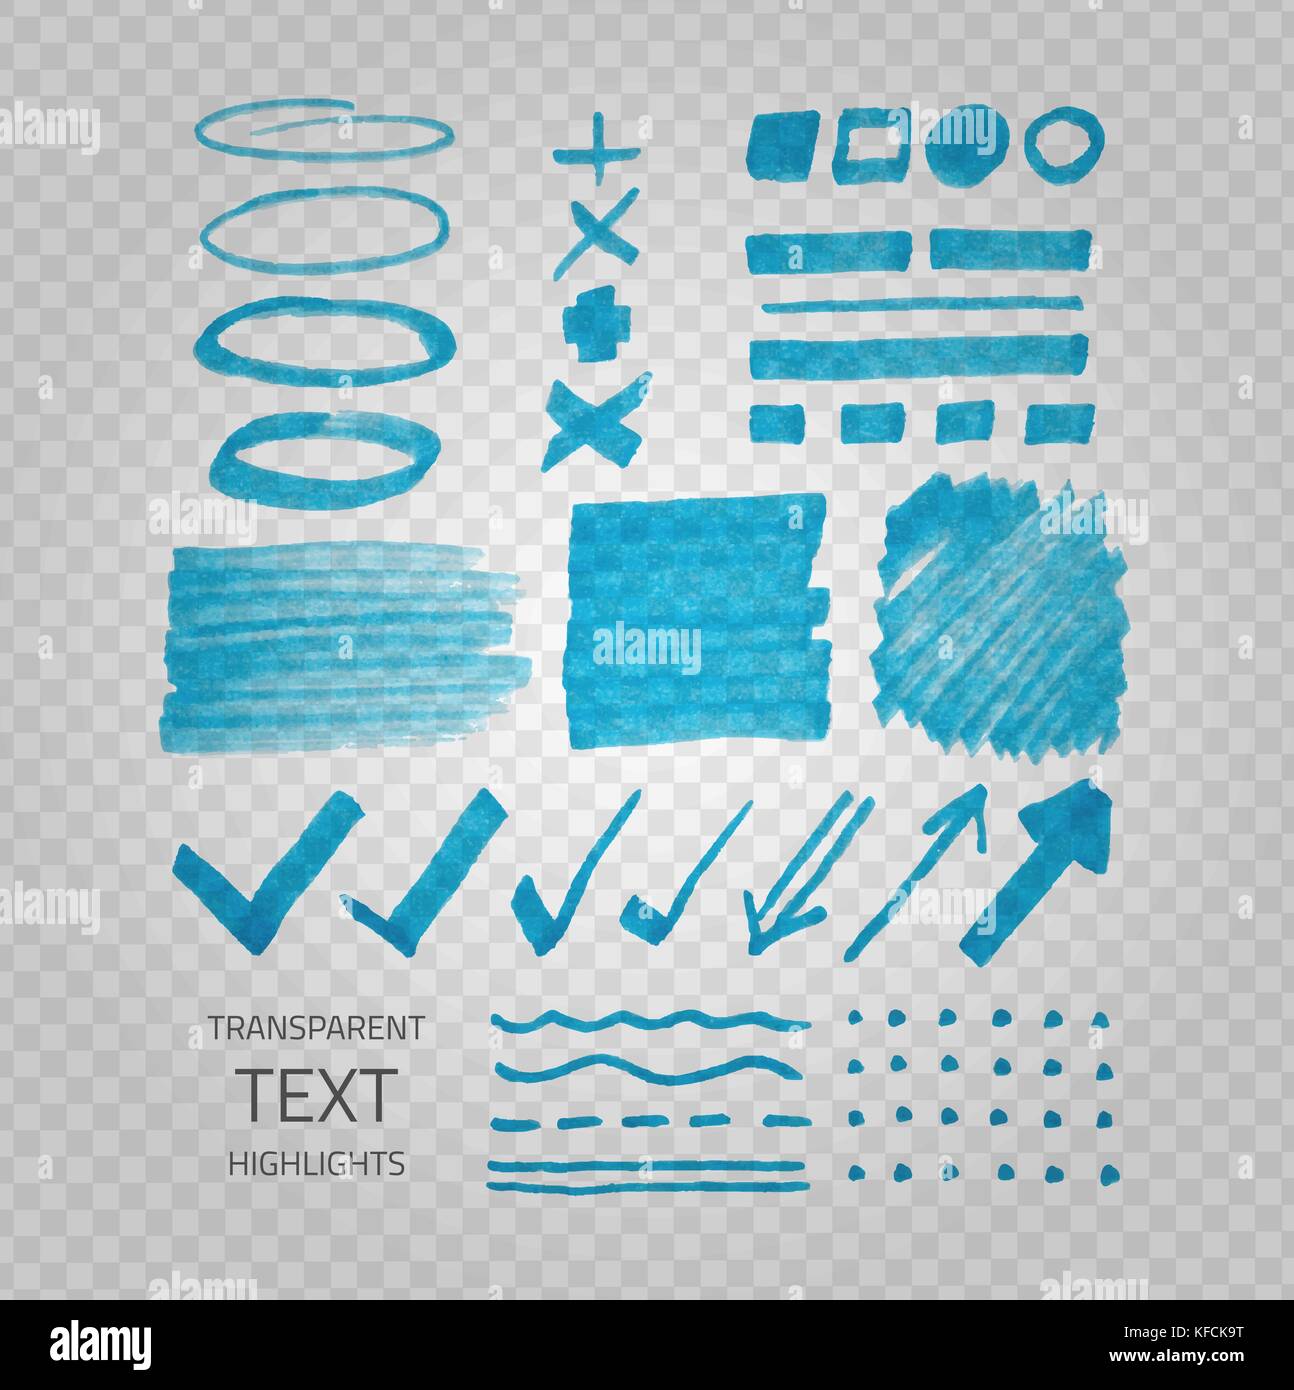 Vektor Sammlung von textmarker Marker Punkte und Zeichen, Hand gezeichnet dekorative Symbole, transparente Elemente auf demonstrative graues Raster Stock Vektor